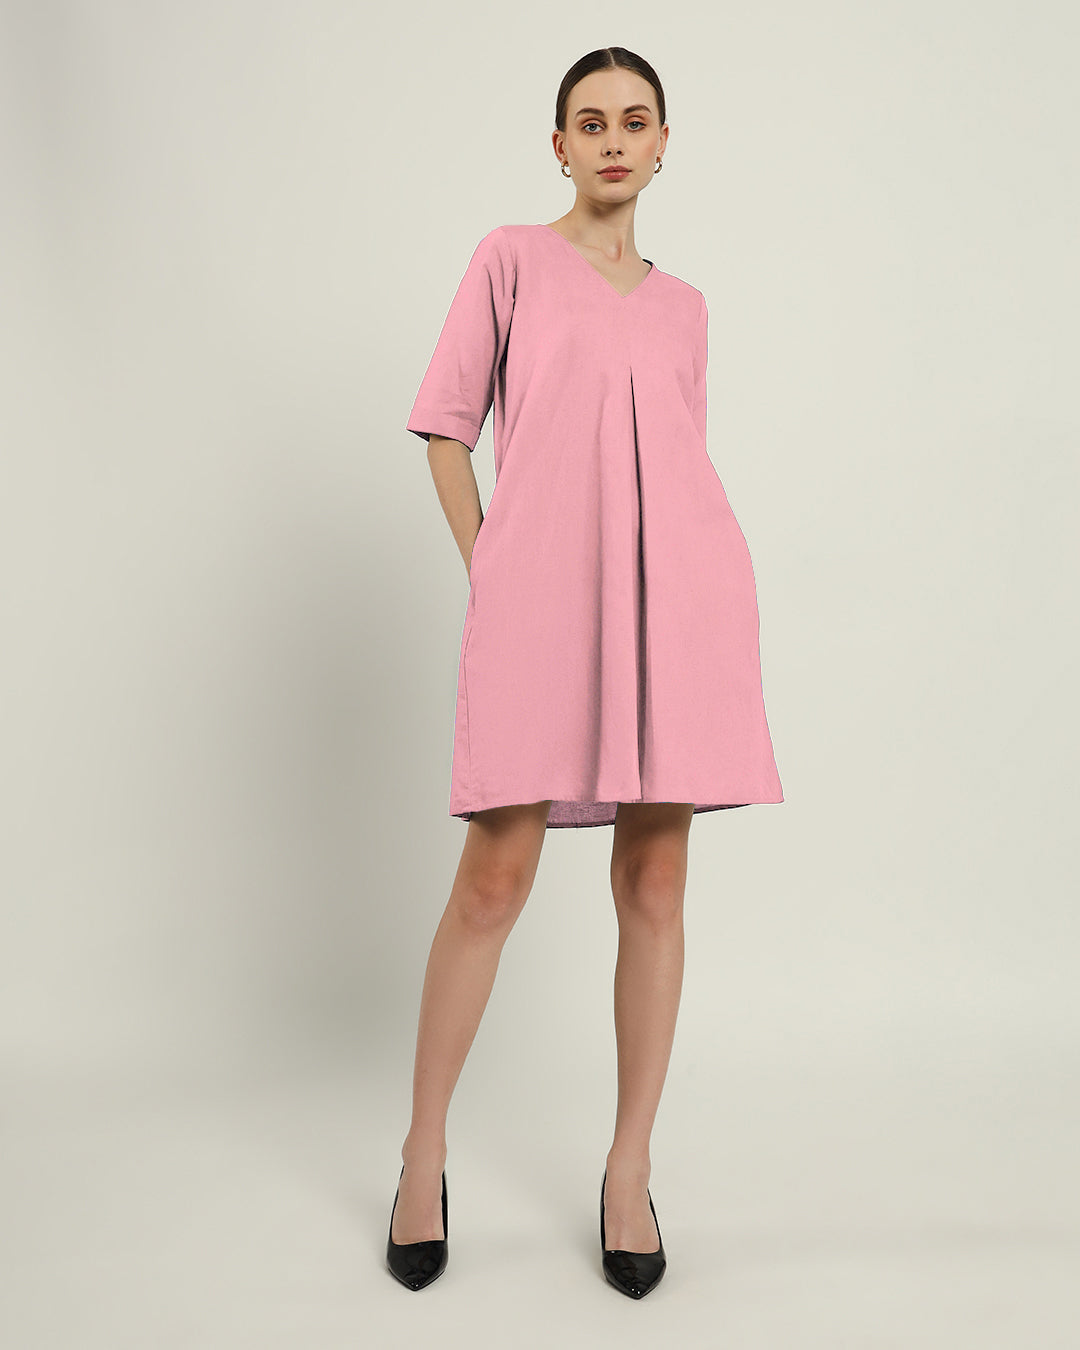 The Giza Fondant Pink Cotton Dress